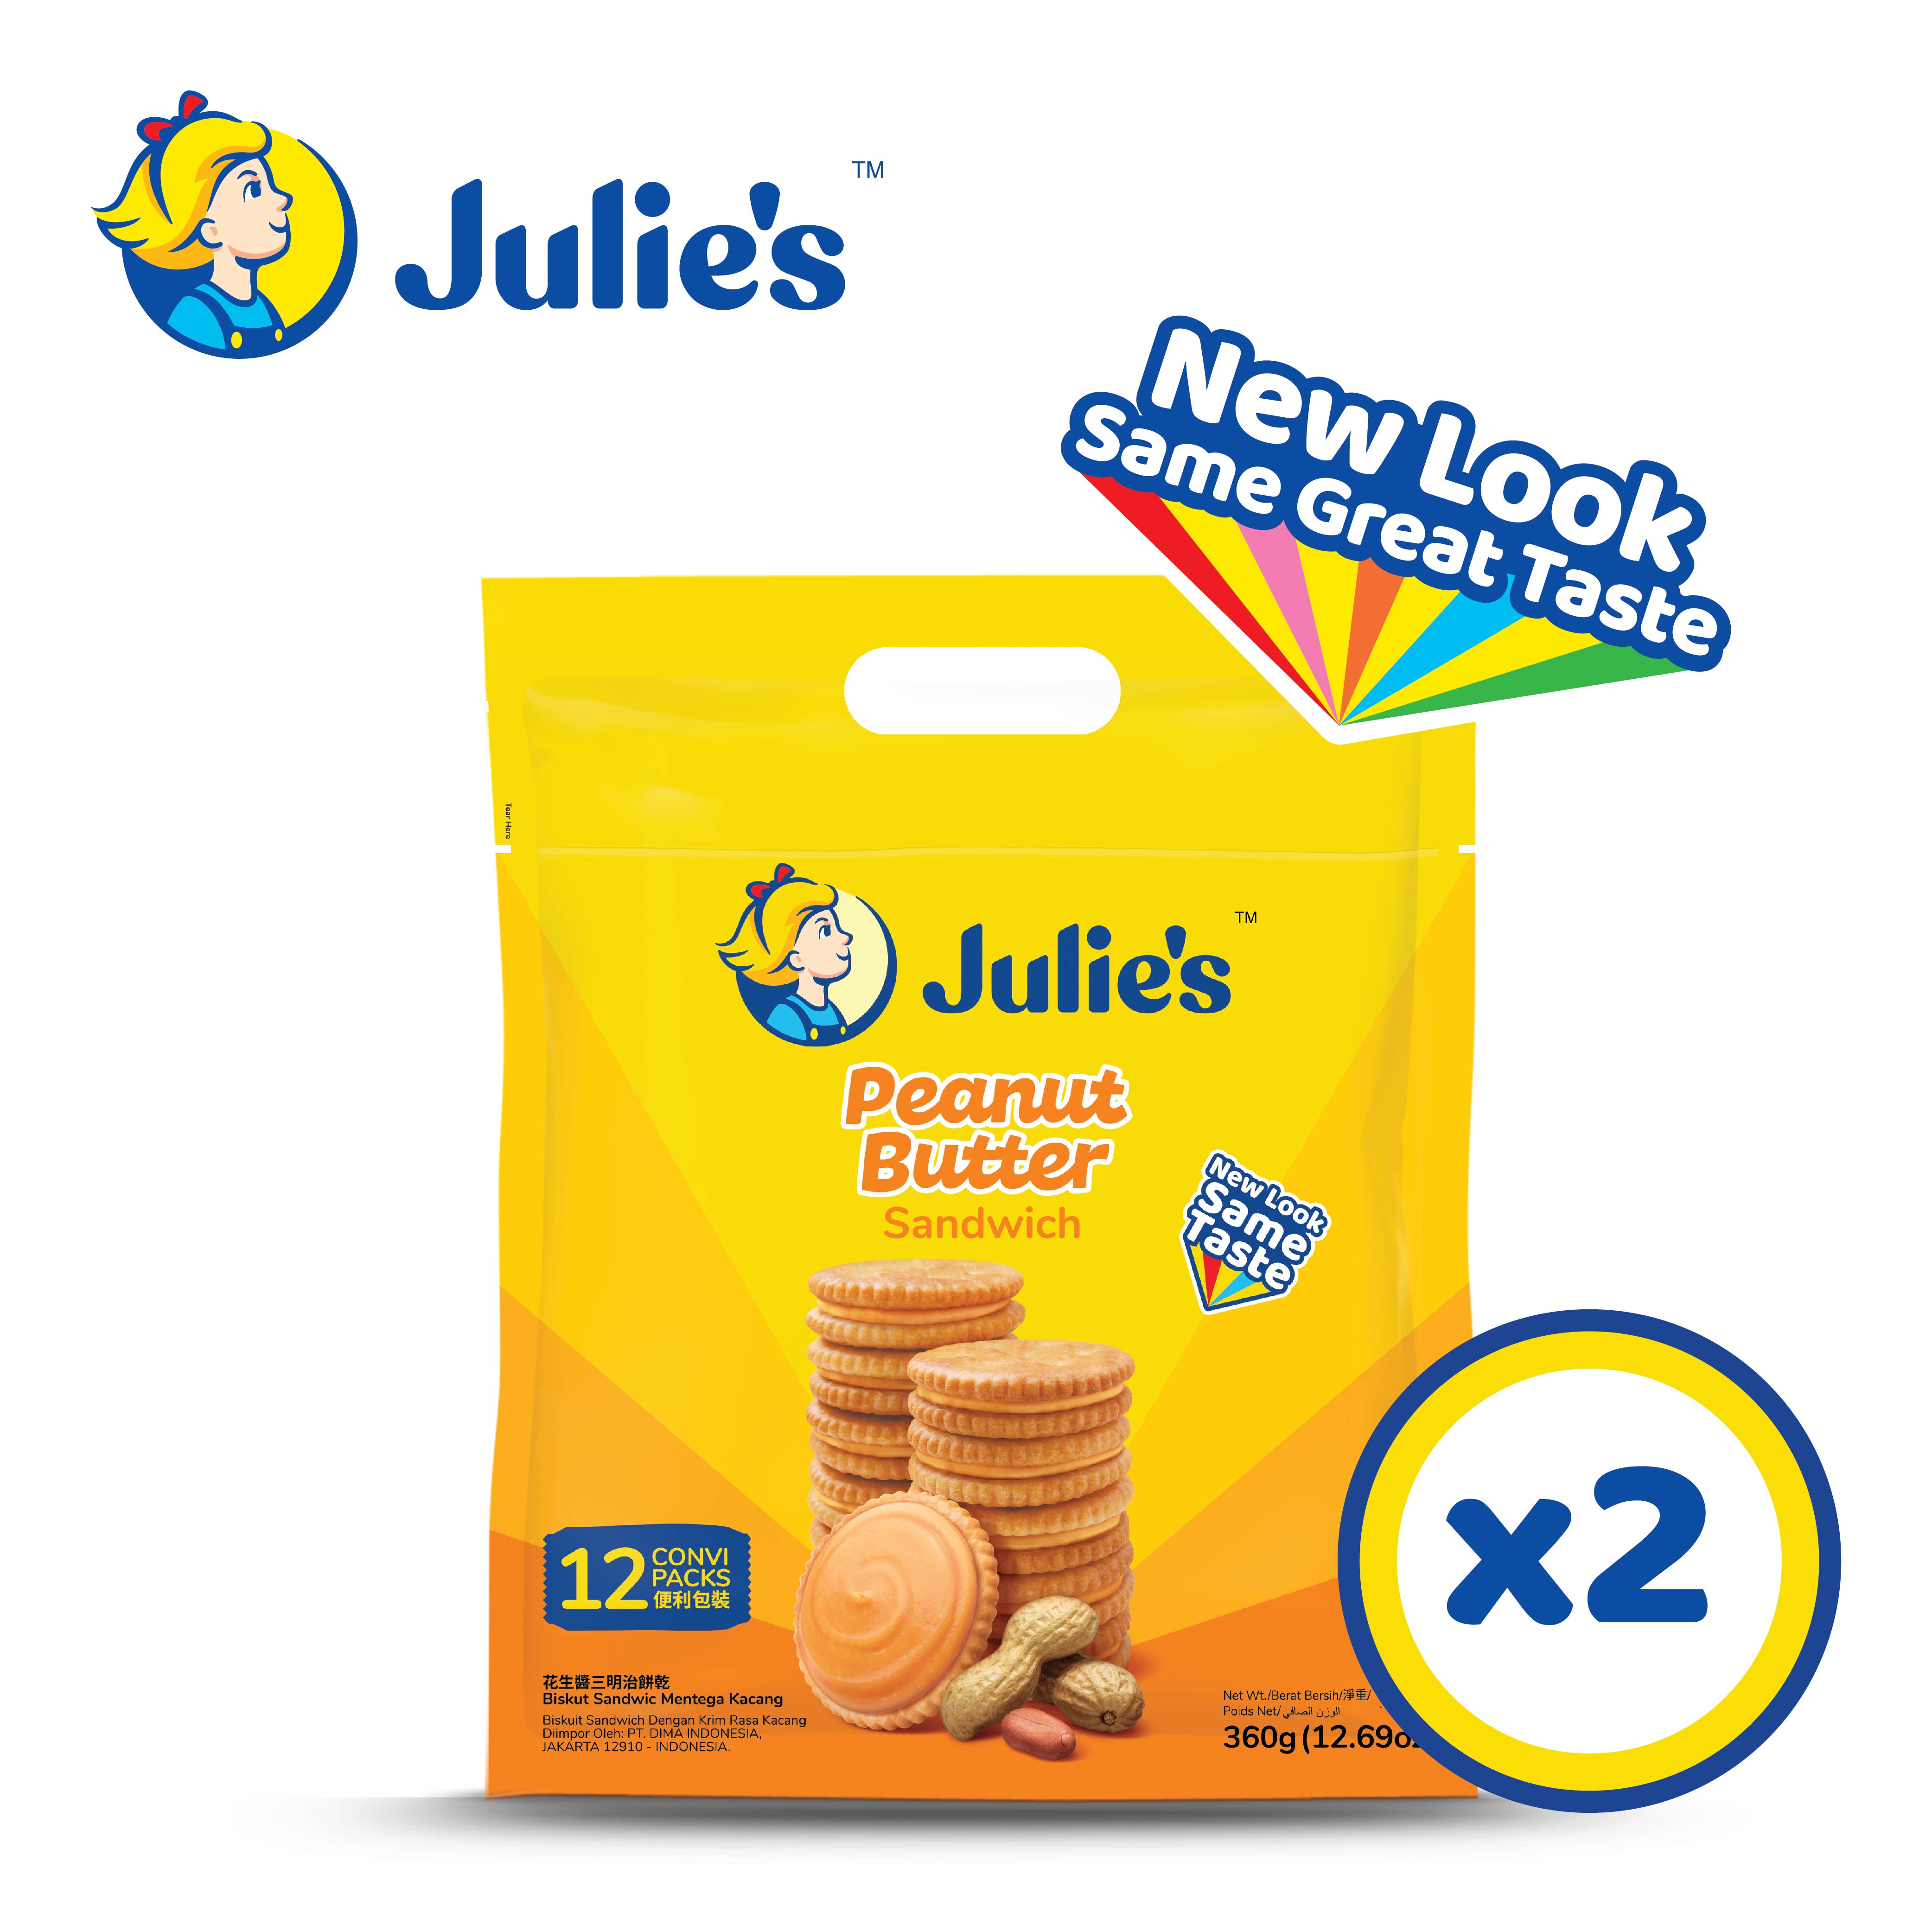 Julie's Peanut Butter Sandwich 360g x 2 pack